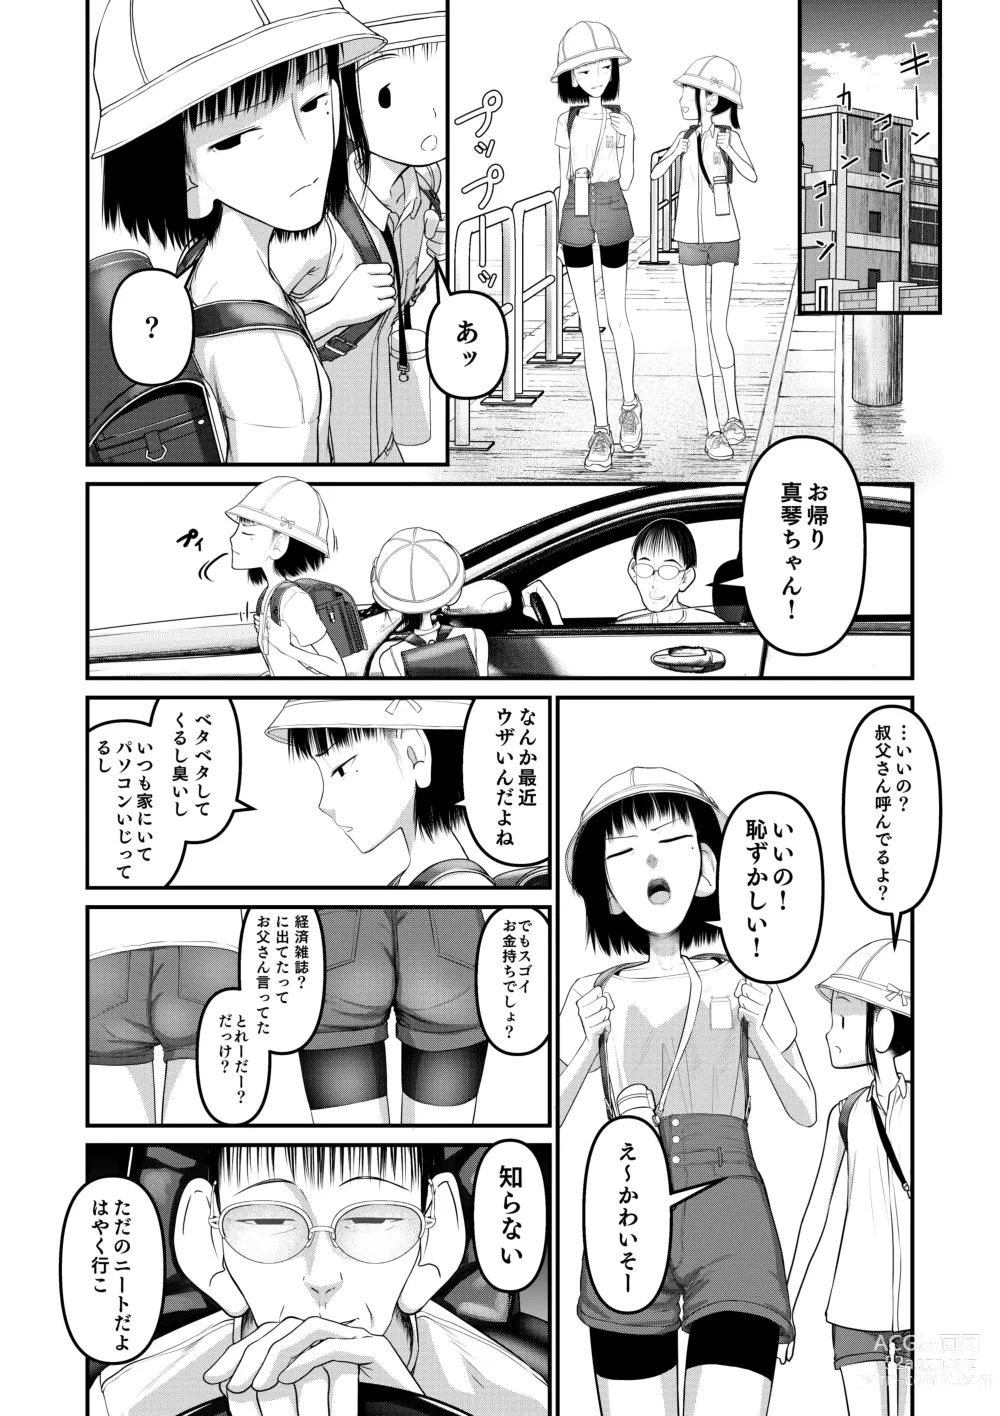 Page 4 of doujinshi Makoto-chan Himitsu no Otetsudai.